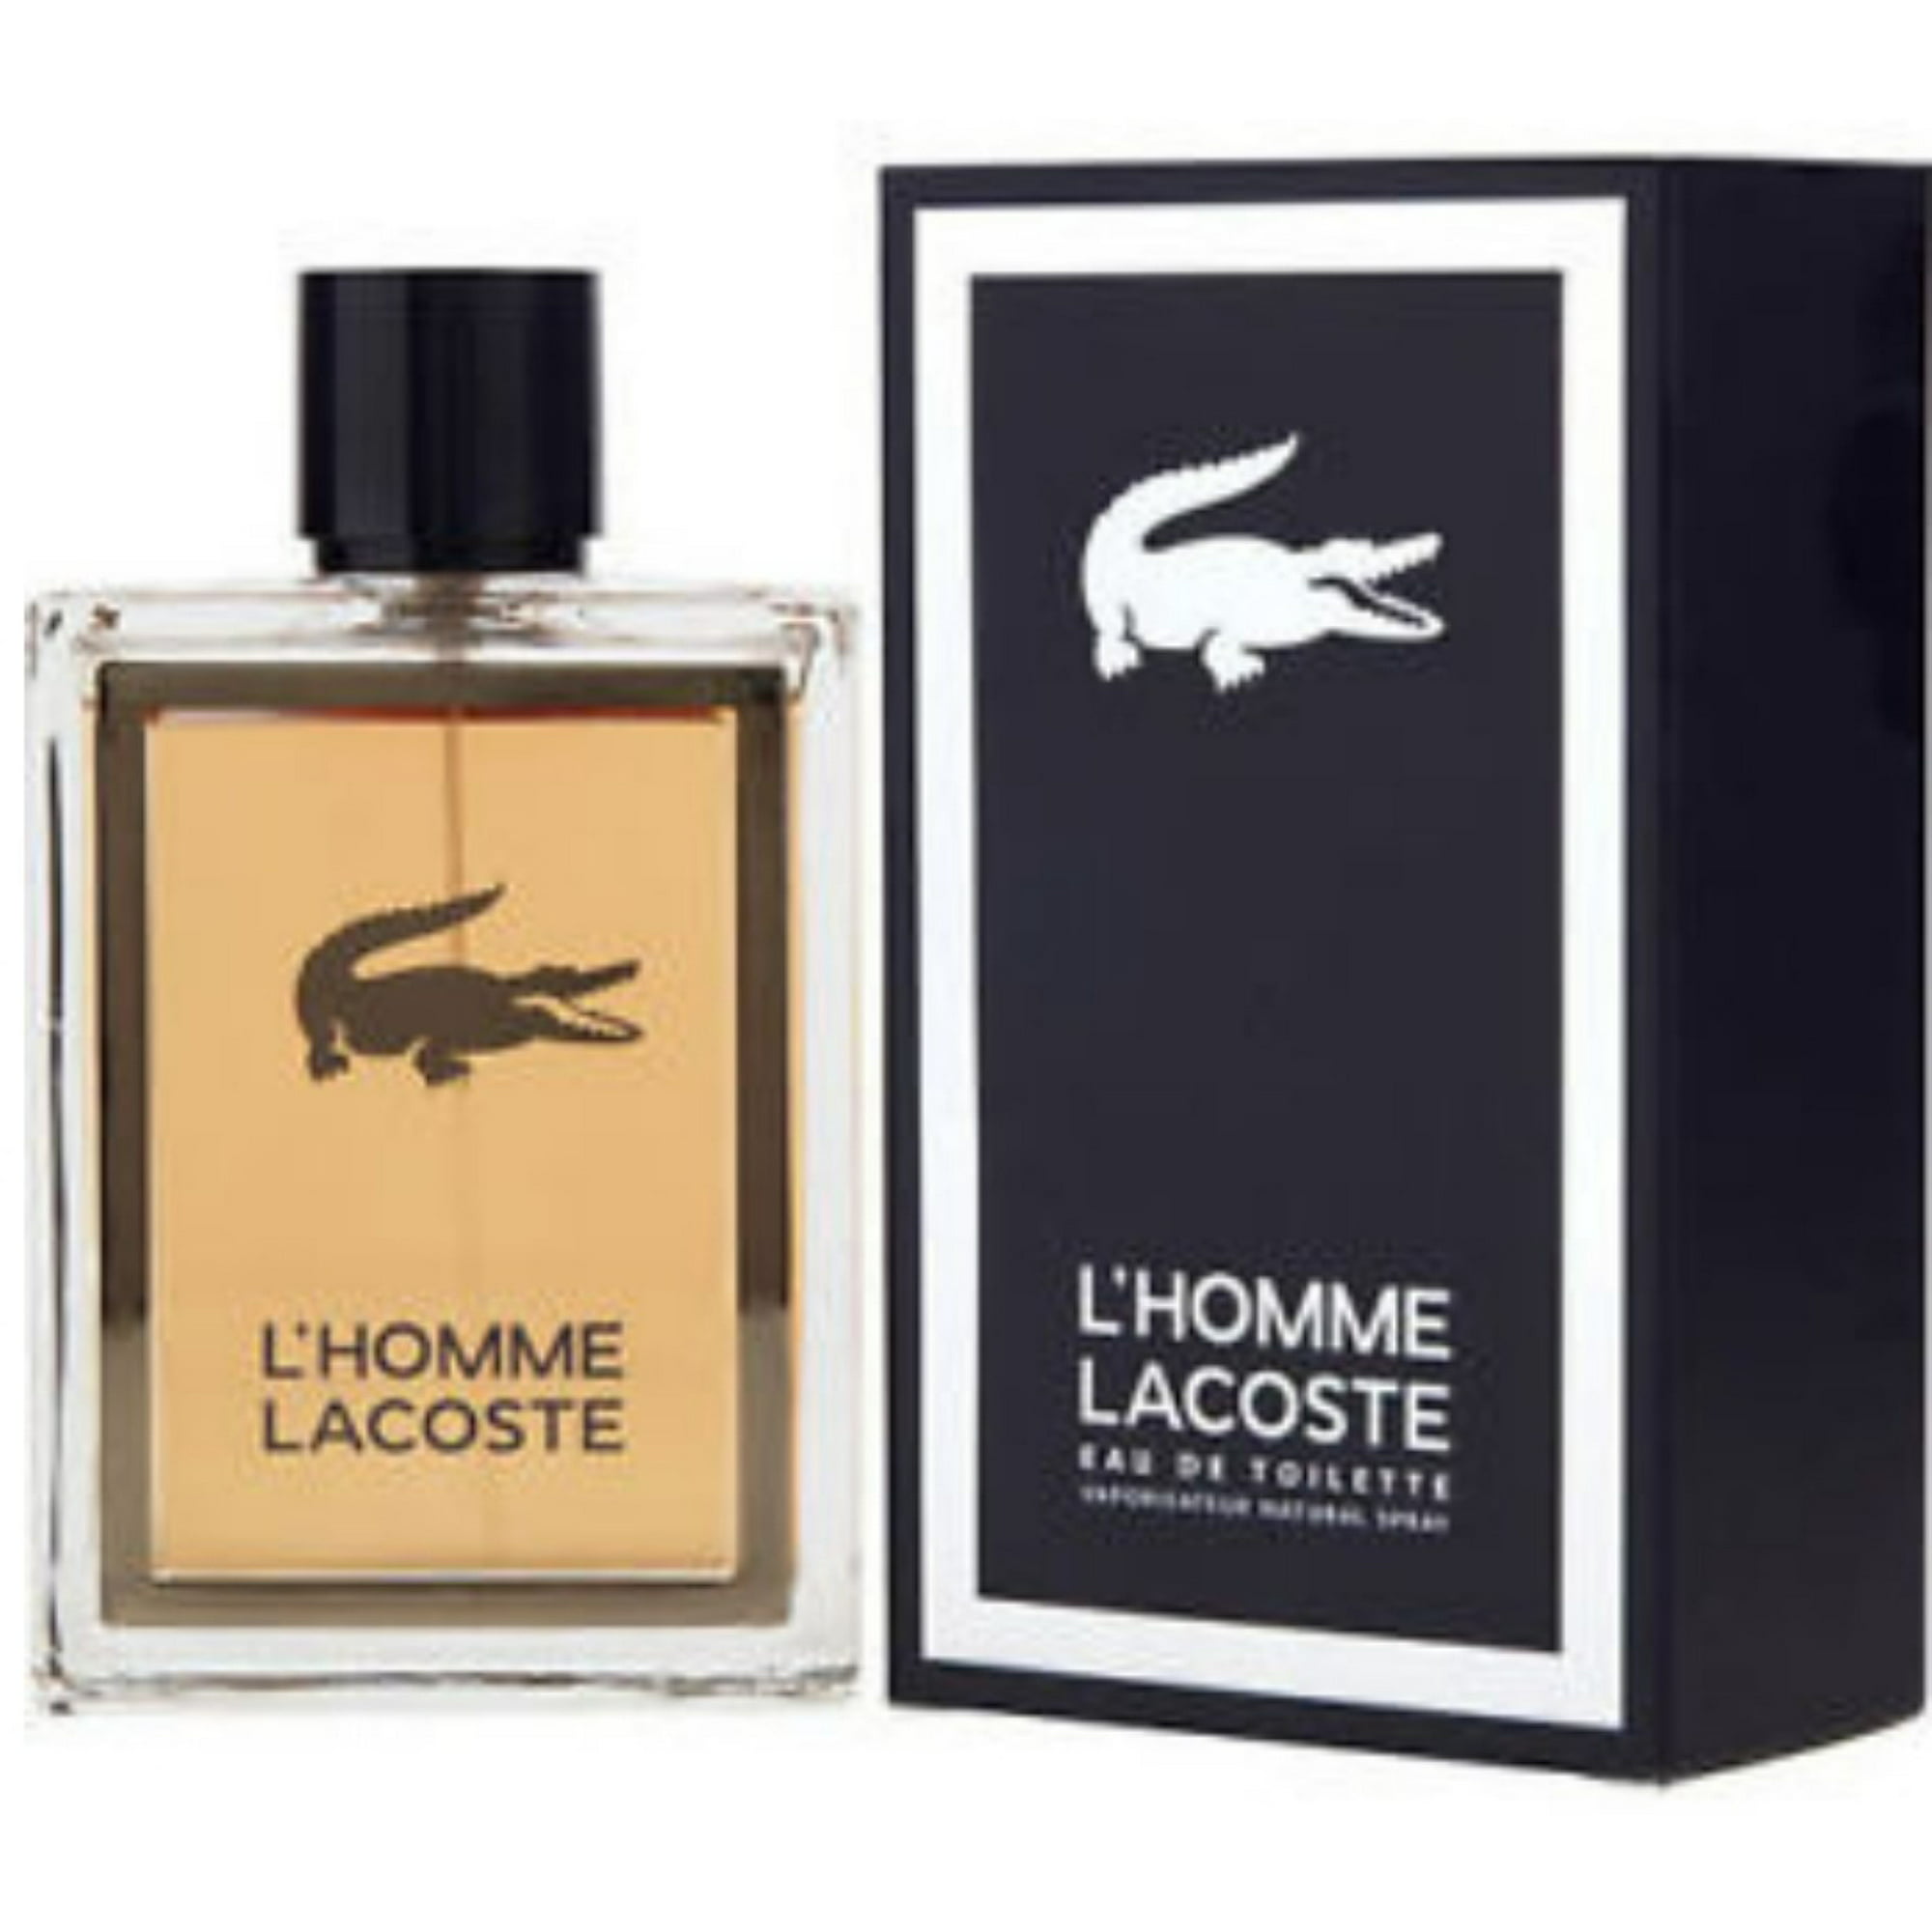 Lacoste L'Homme De Toilette Spray 5.0 oz - Walmart.com